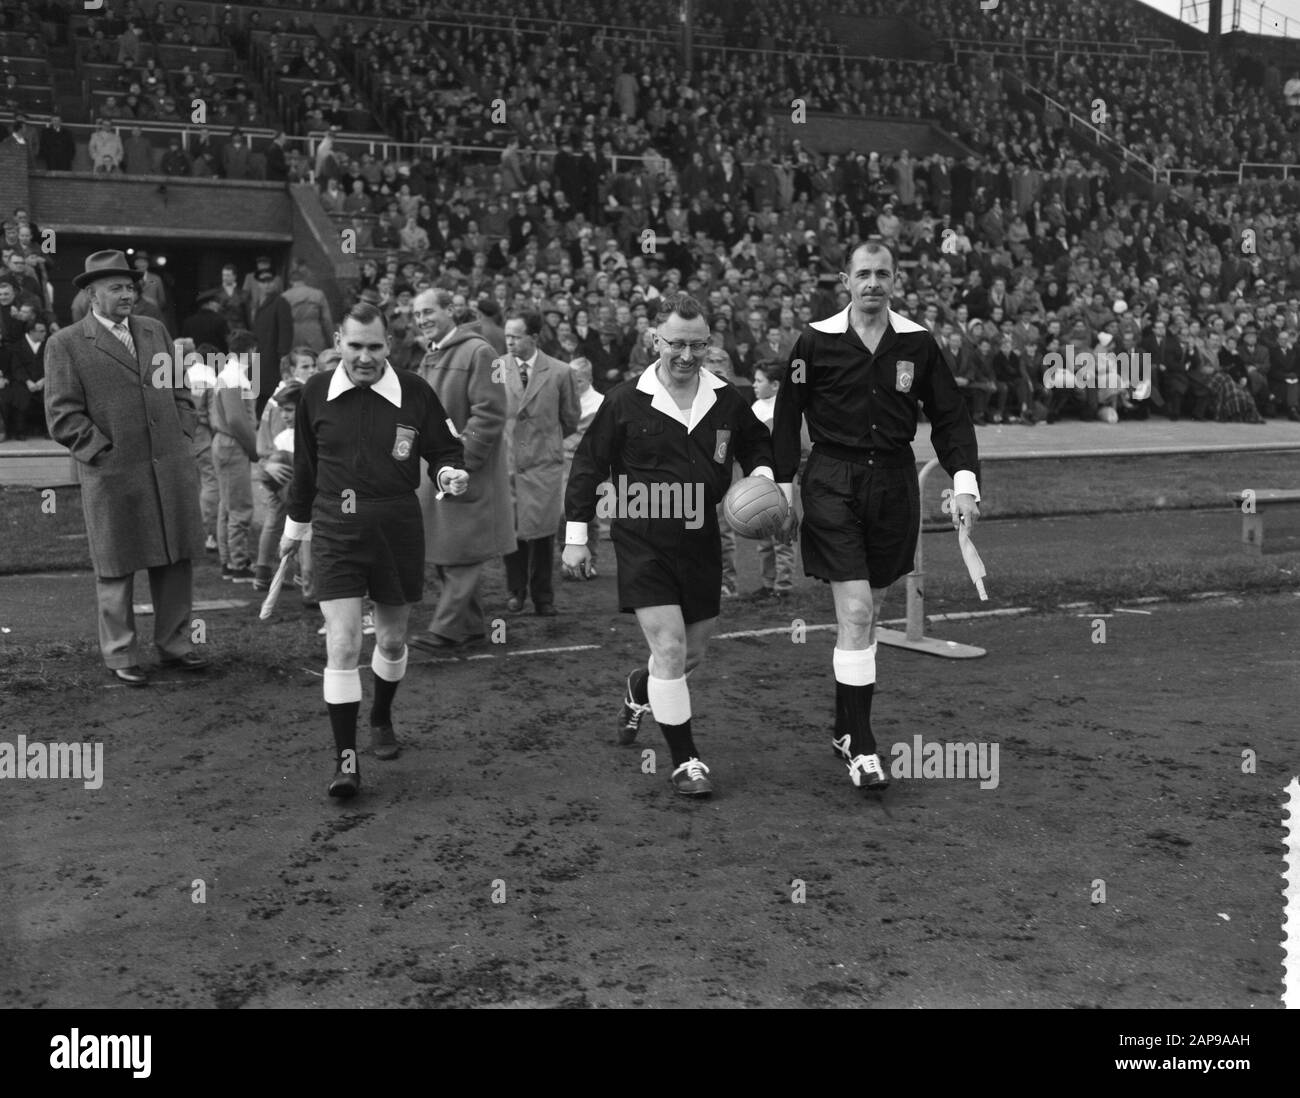 Blu-Bianco contro Ajax 1-0 Data: 8 Novembre 1959 Parole Chiave: Sport, calcio Nome dell'istituzione: AJAX, Blu-bianco Foto Stock